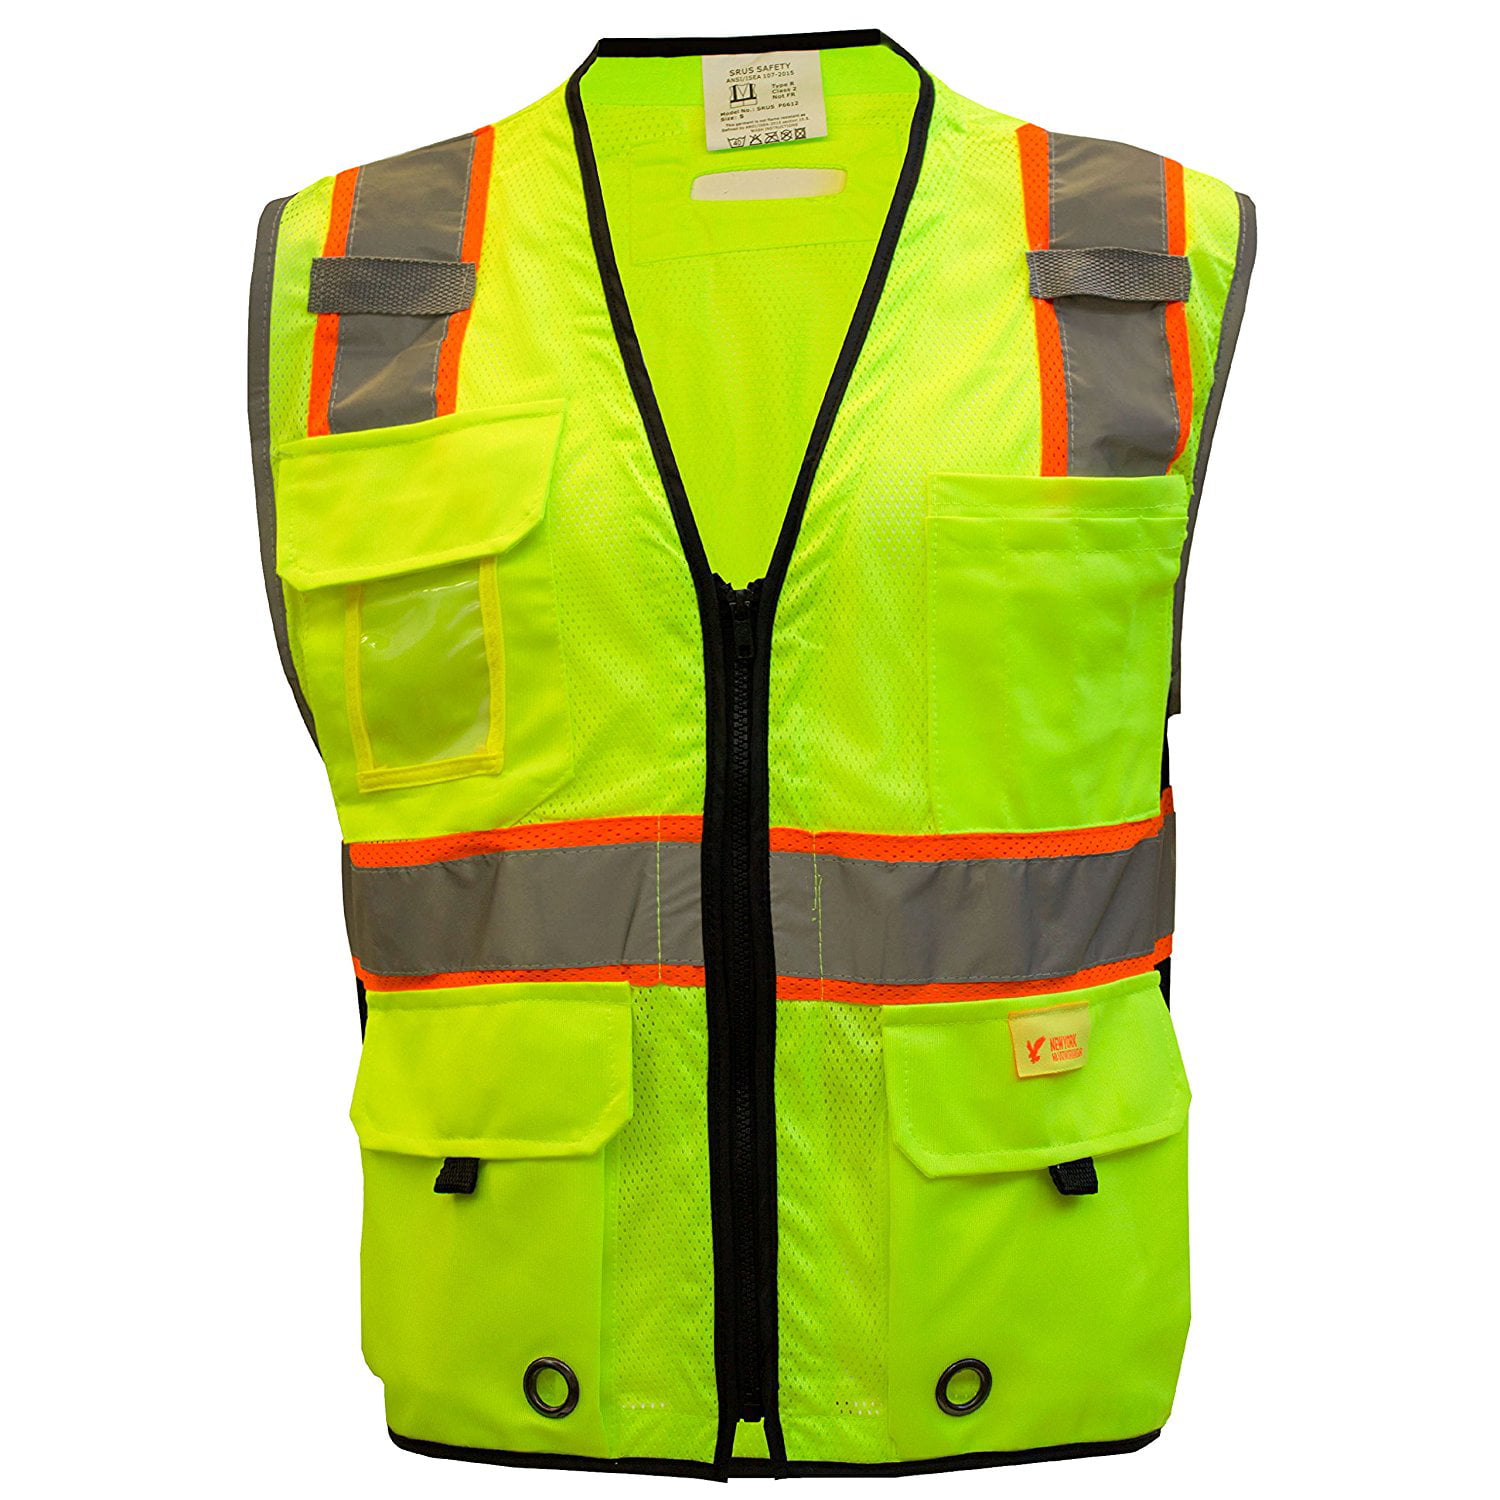 HN BL_ Adjustable Safety High Visibility Reflective Vest Elastic Strap Jacket N 